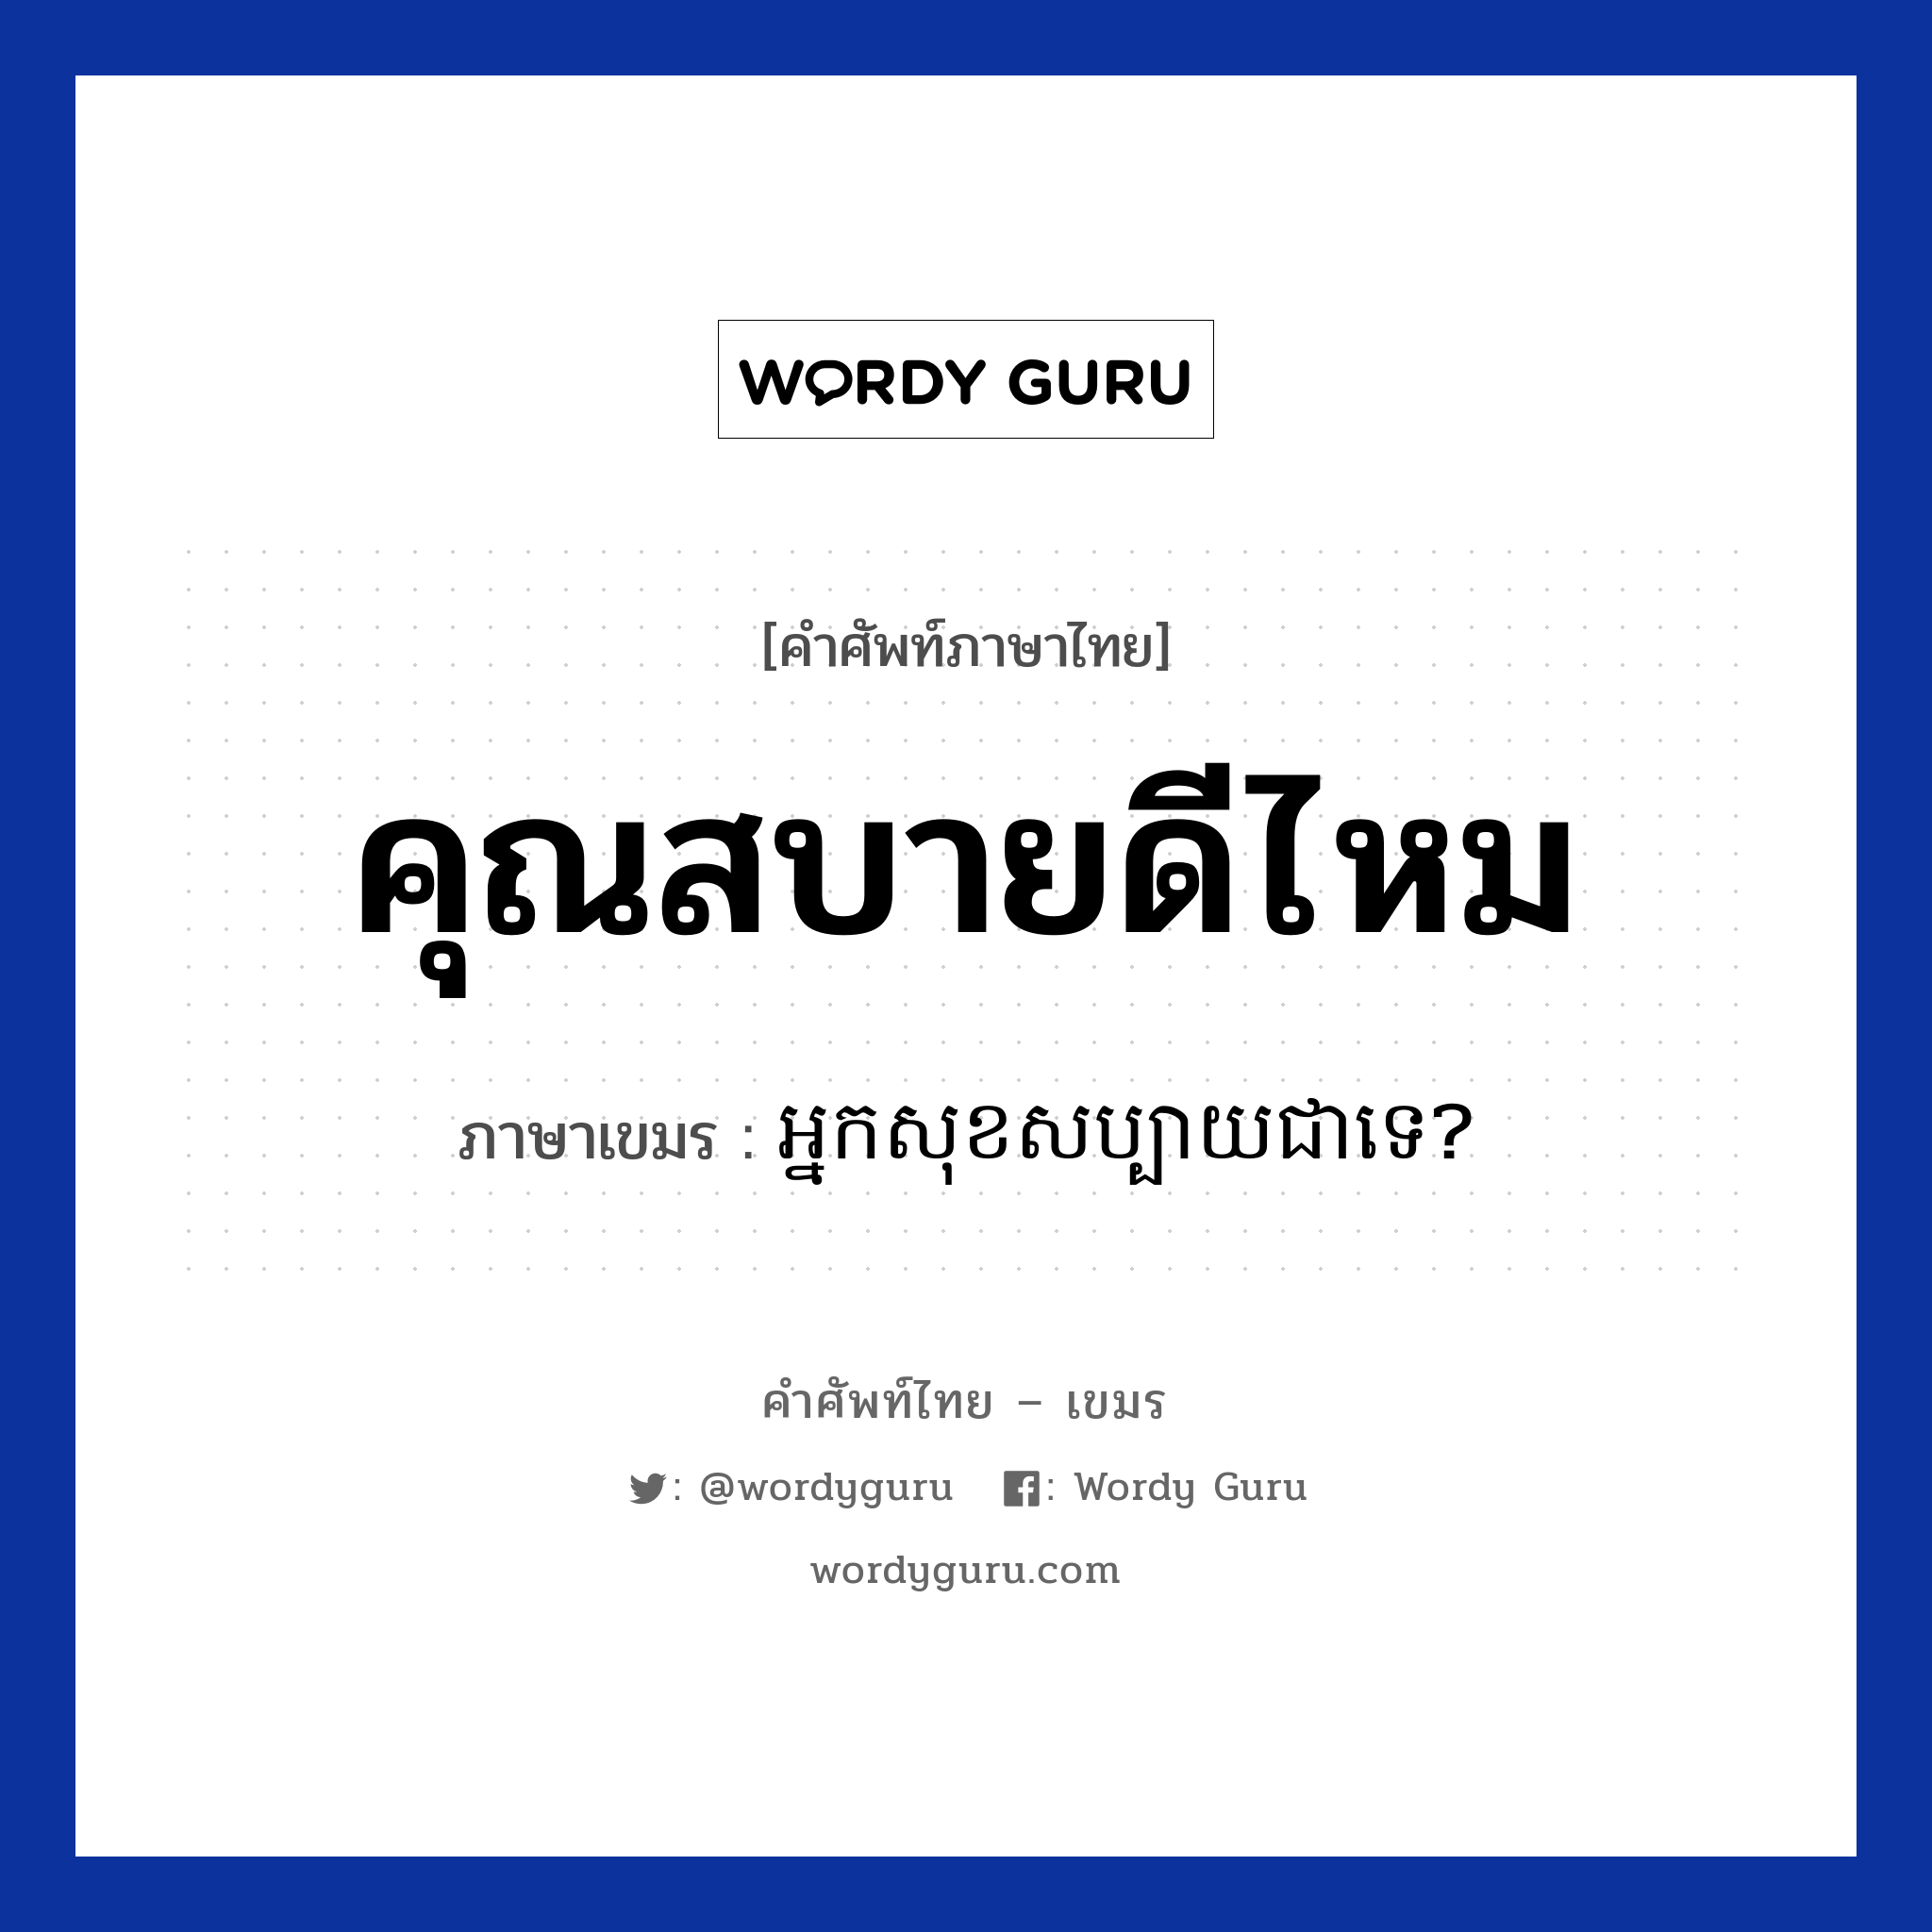 คุณสบายดีไหม ภาษาเขมรคืออะไร, คำศัพท์ภาษาไทย - เขมร คุณสบายดีไหม ภาษาเขมร អ្នកសុខសប្បាយជាទេ? หมวด ทักทาย Neak sok sabai chea te? หมวด ทักทาย